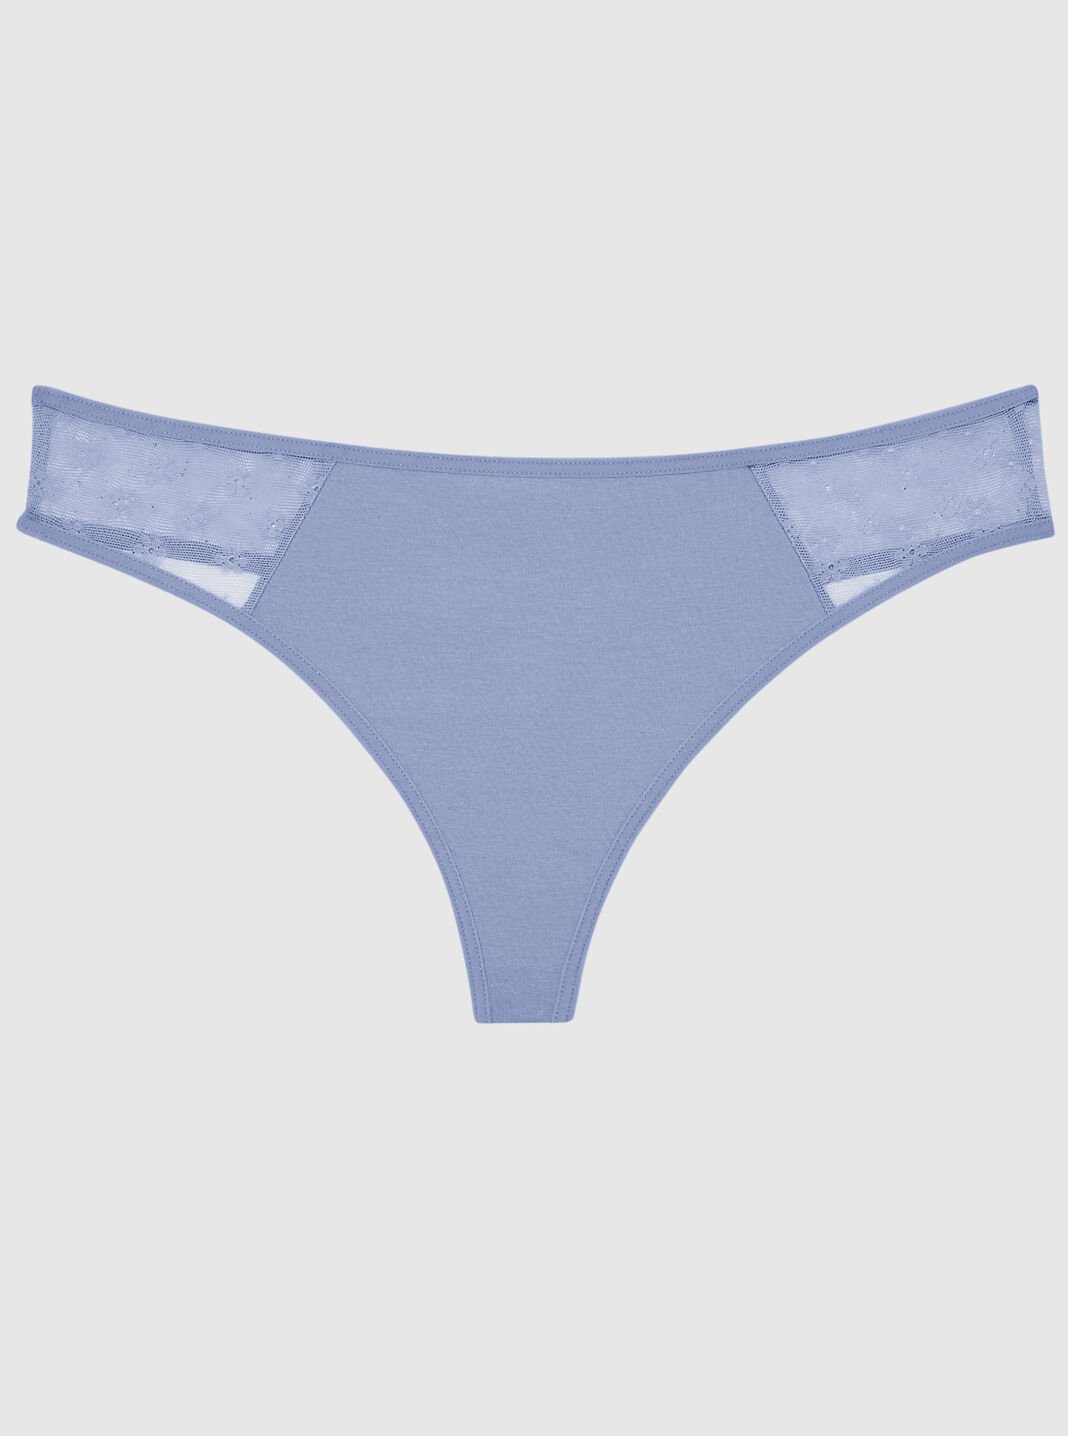 Shop Thongs & V-Strings for Panties Online